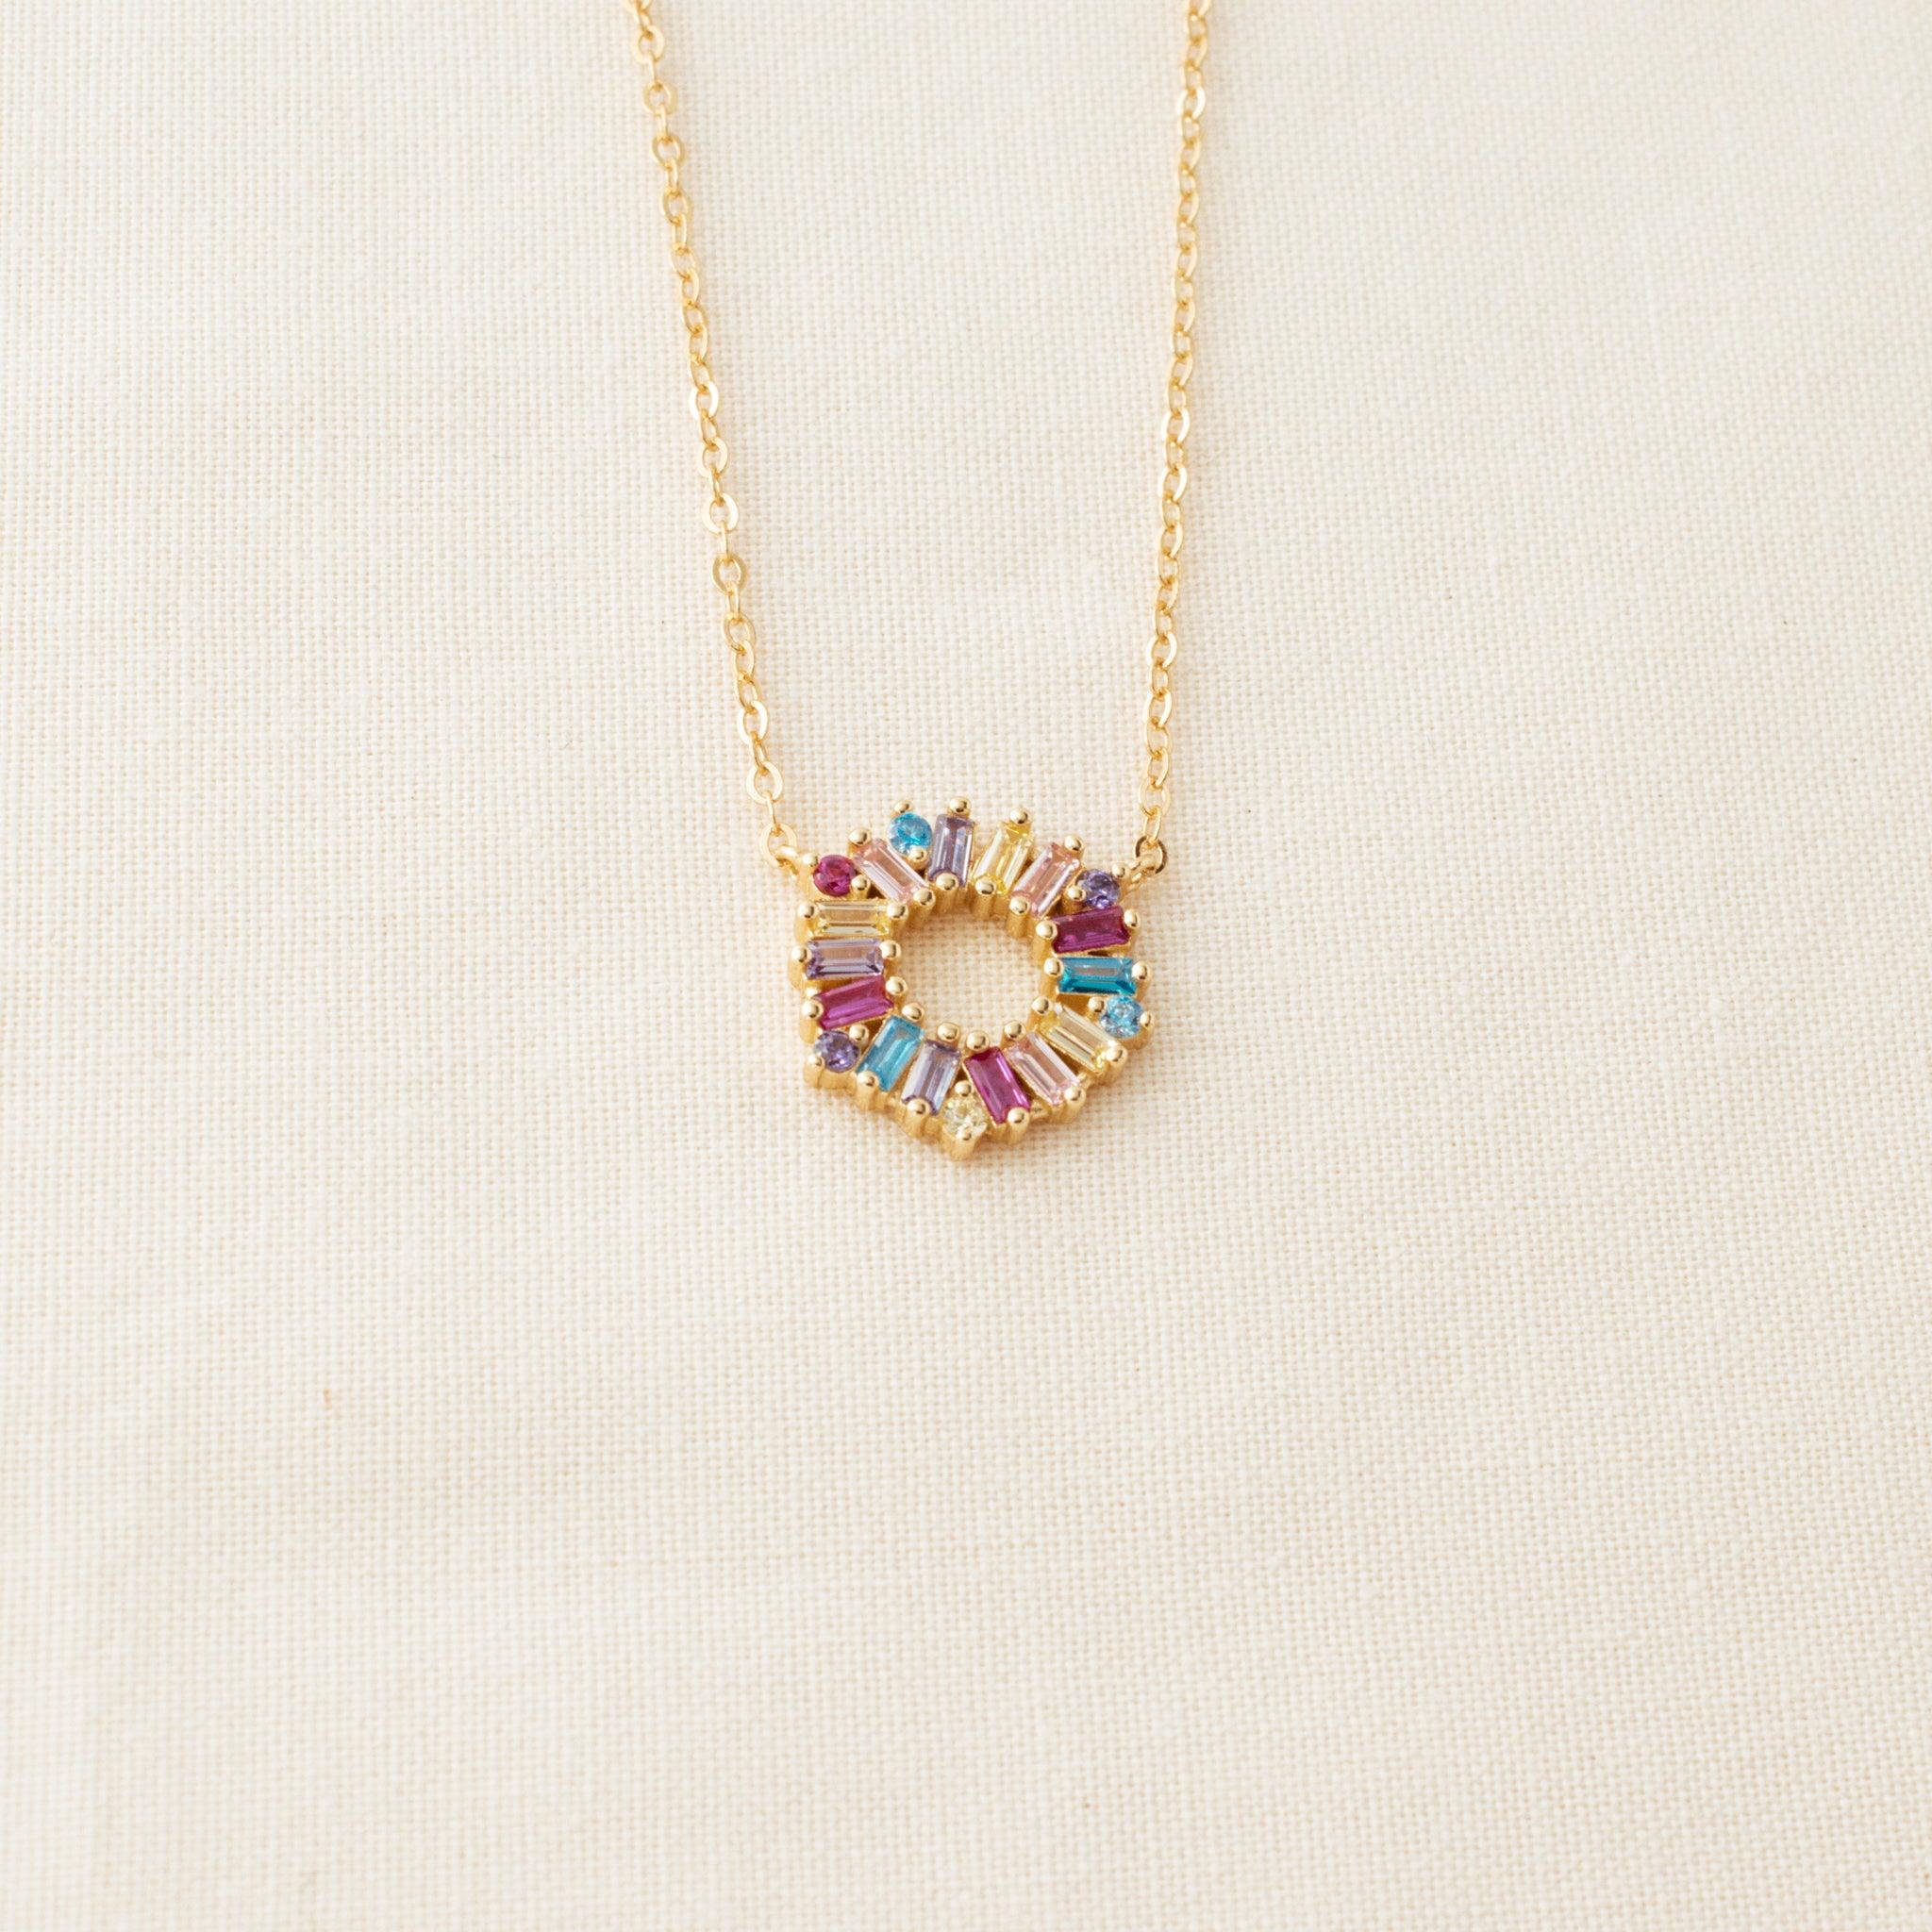 Multicolor Crystal Pendant Necklace by avantejewel.com